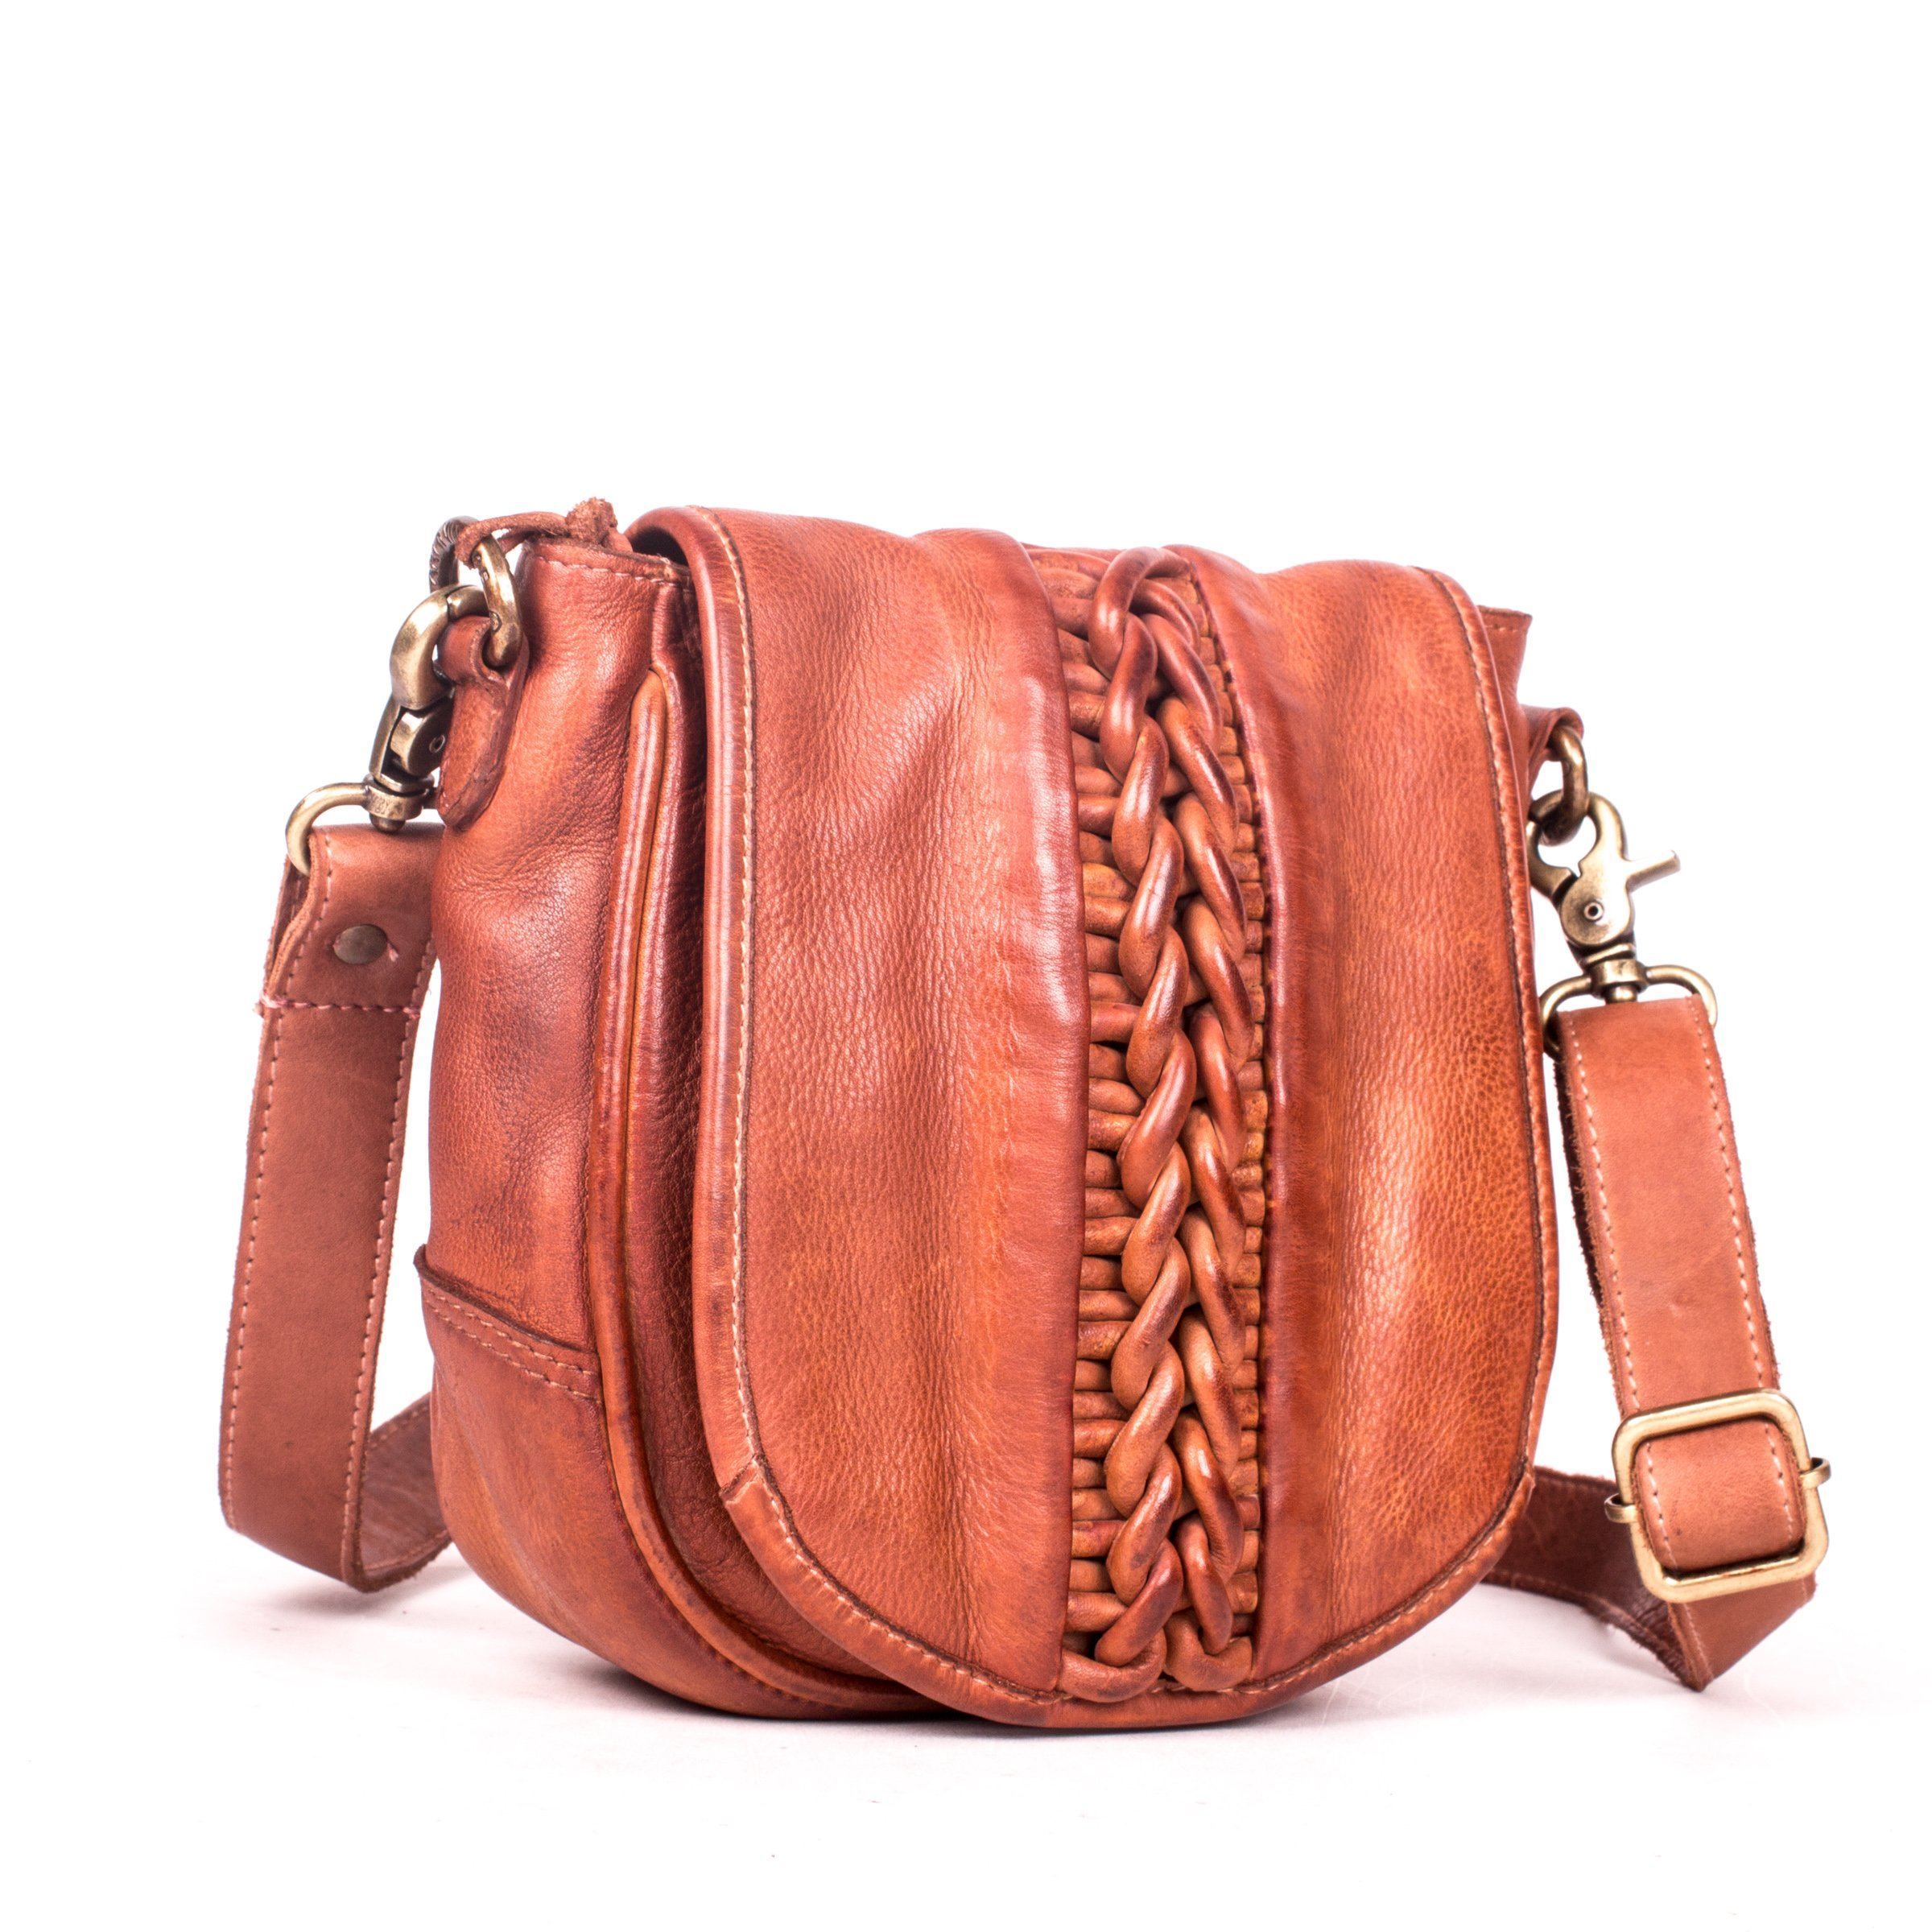 Art N’ Vintage – Women’s Cognac Milano leather Sling Bag